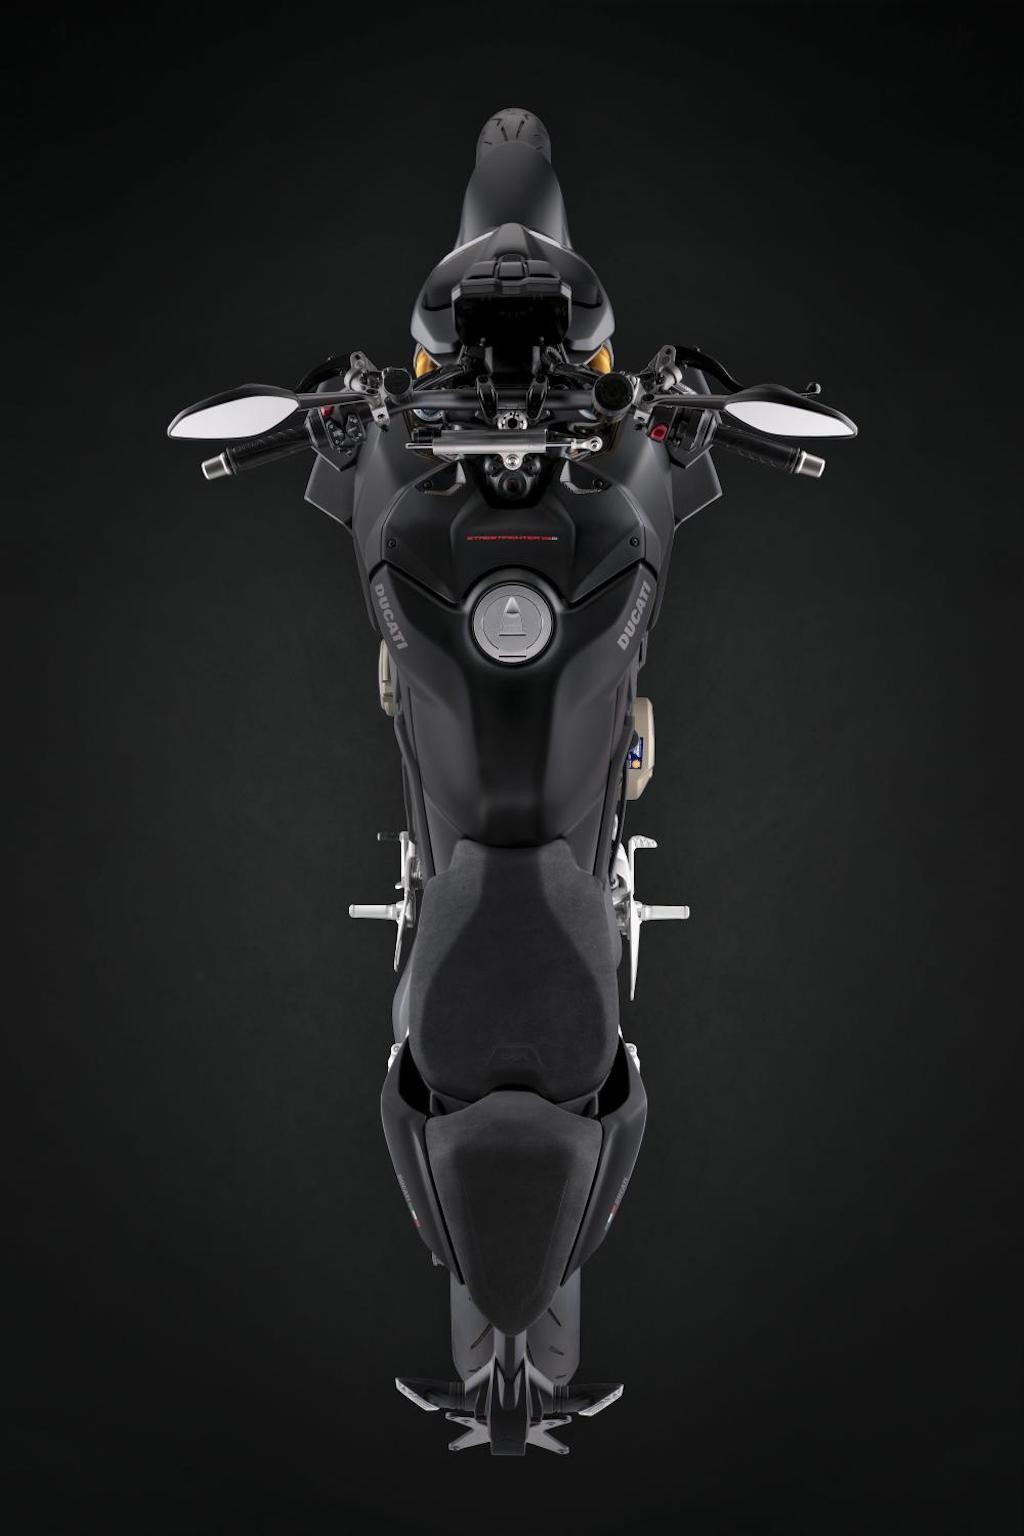 Vốn đầy vẻ nguy hiểm, naked bike đỉnh nhất nhà Ducati còn ngầu hơn nhờ được “đen hoá“ ảnh 15